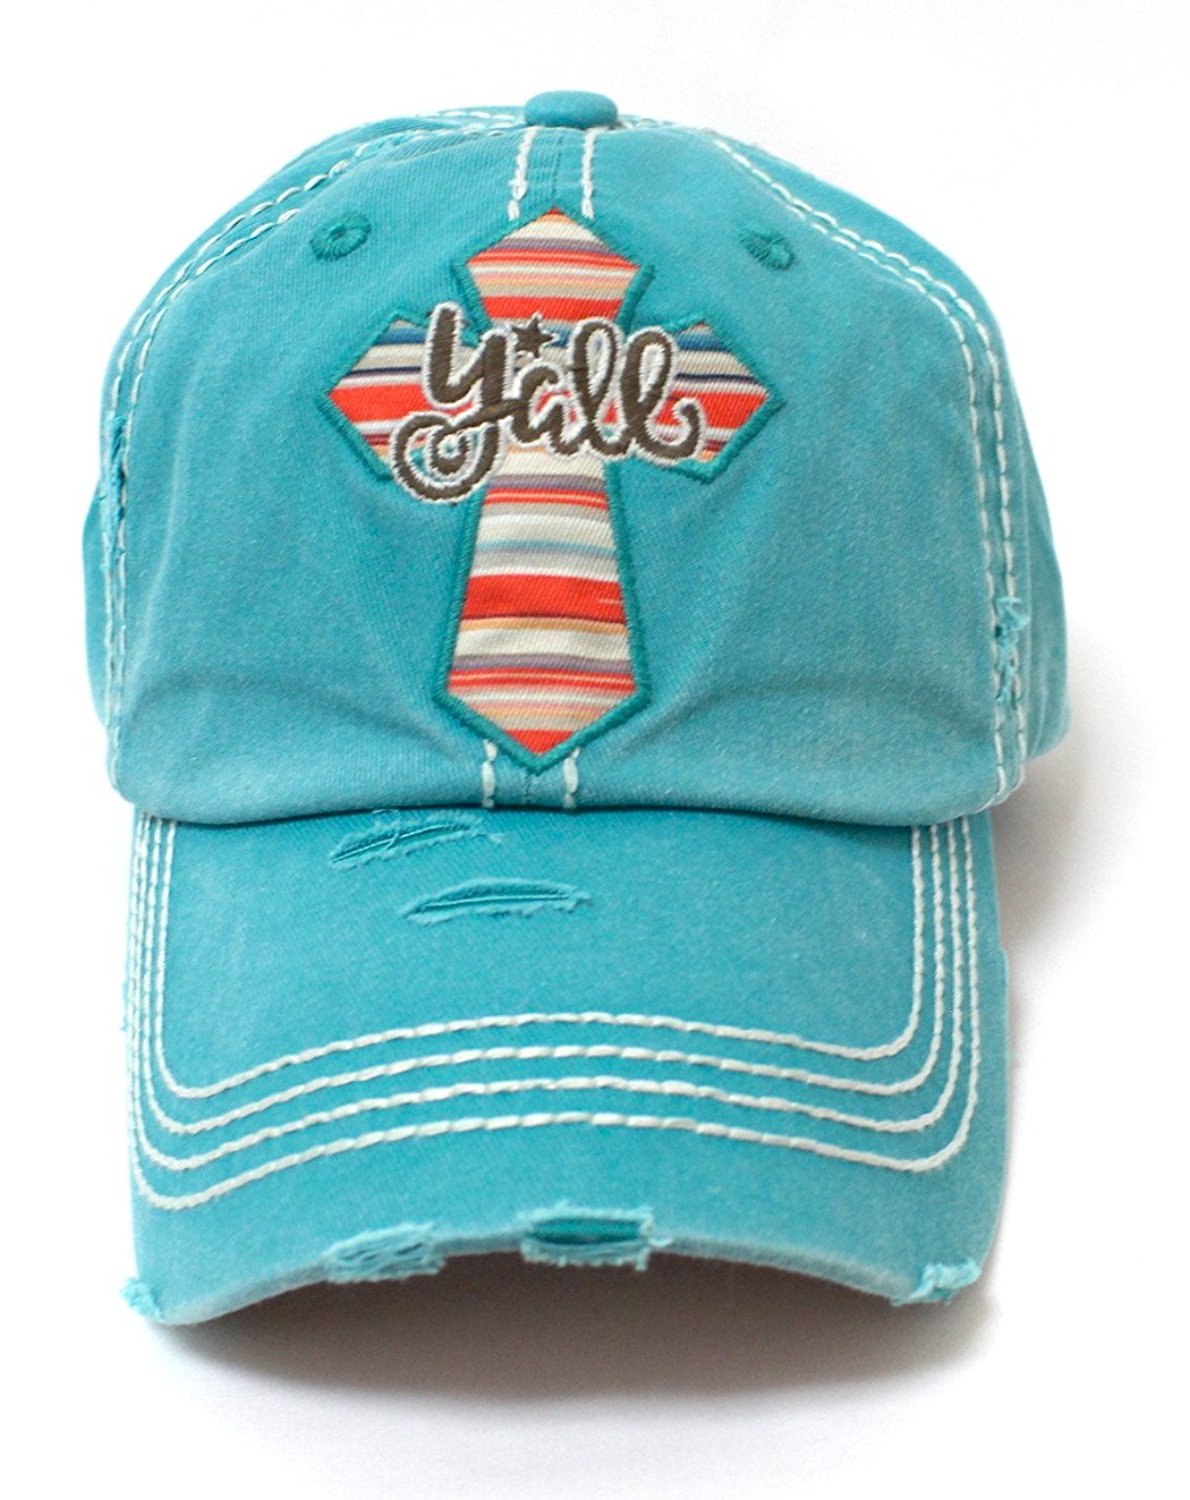 CAPS 'N VINTAGE Turquoise Serape Y'all Cross Embroidery Hat - Caps 'N Vintage 